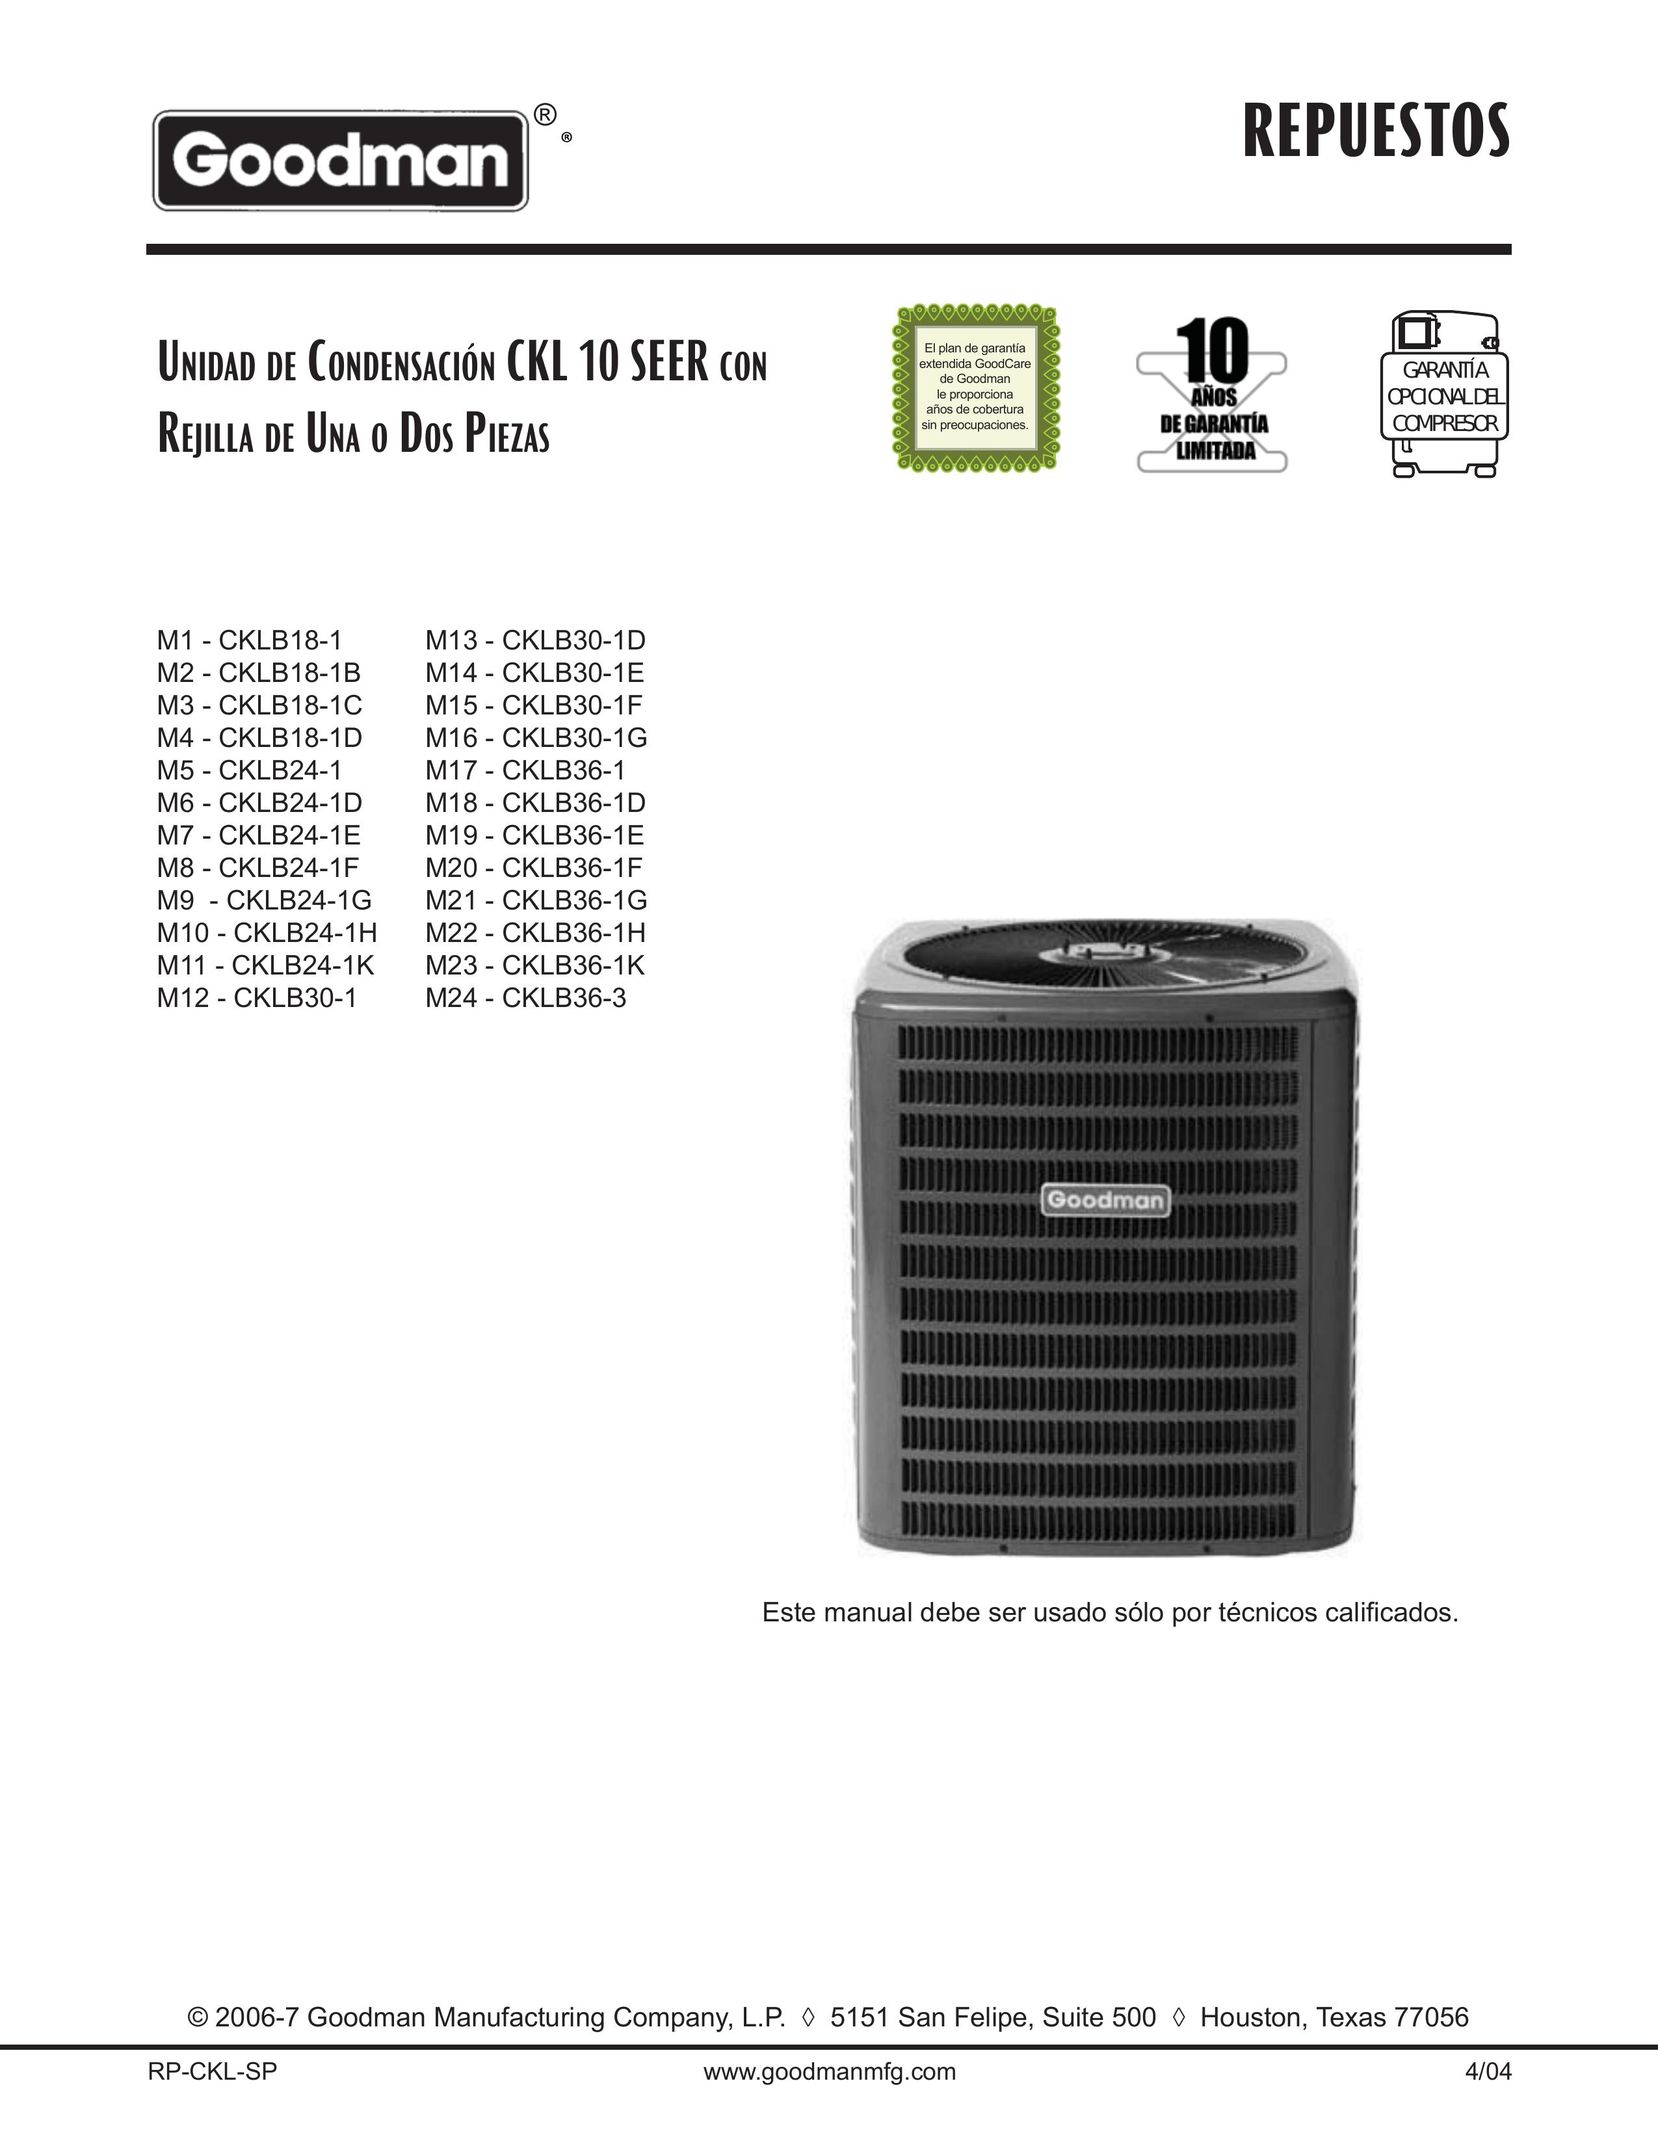 Goodman Mfg CKLB18-1 Air Conditioner User Manual